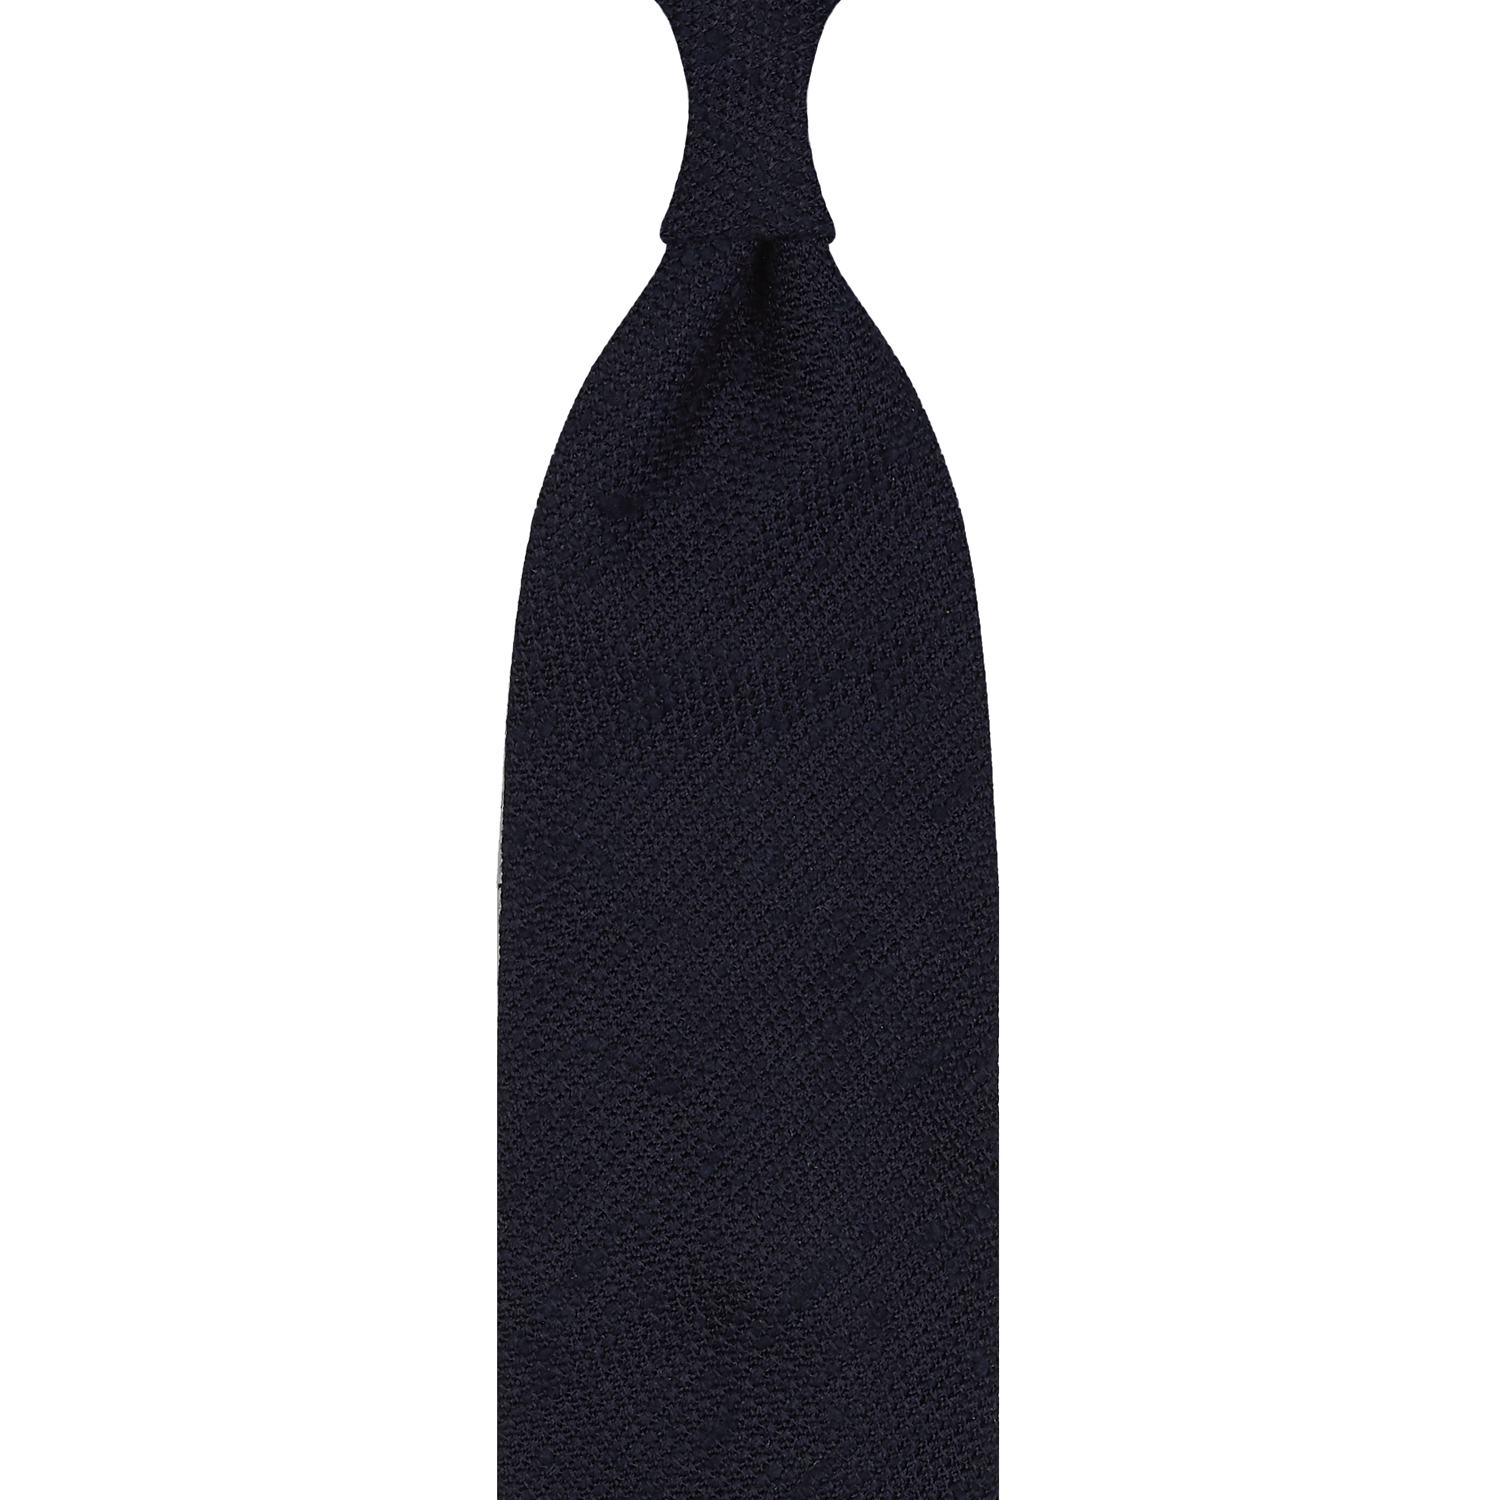 Cravate en grenadine de soie shantung bleu marine, roulée à la main - 3 plis